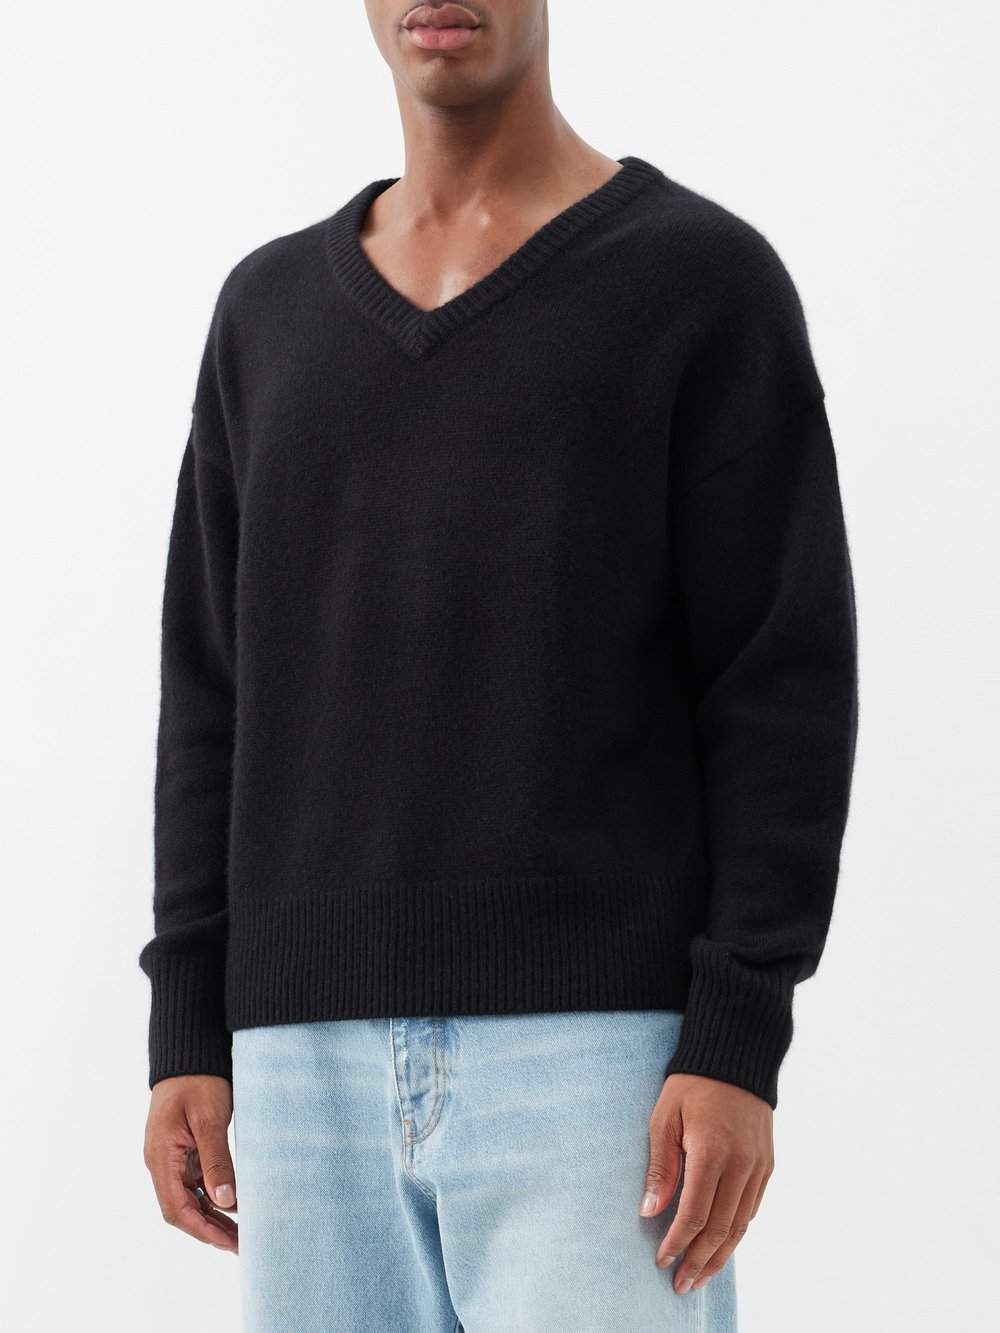 Кашемировый свитер mr battersea с v-образным вырезом Arch4, черный черный кашемировый кардиган janelle arch4